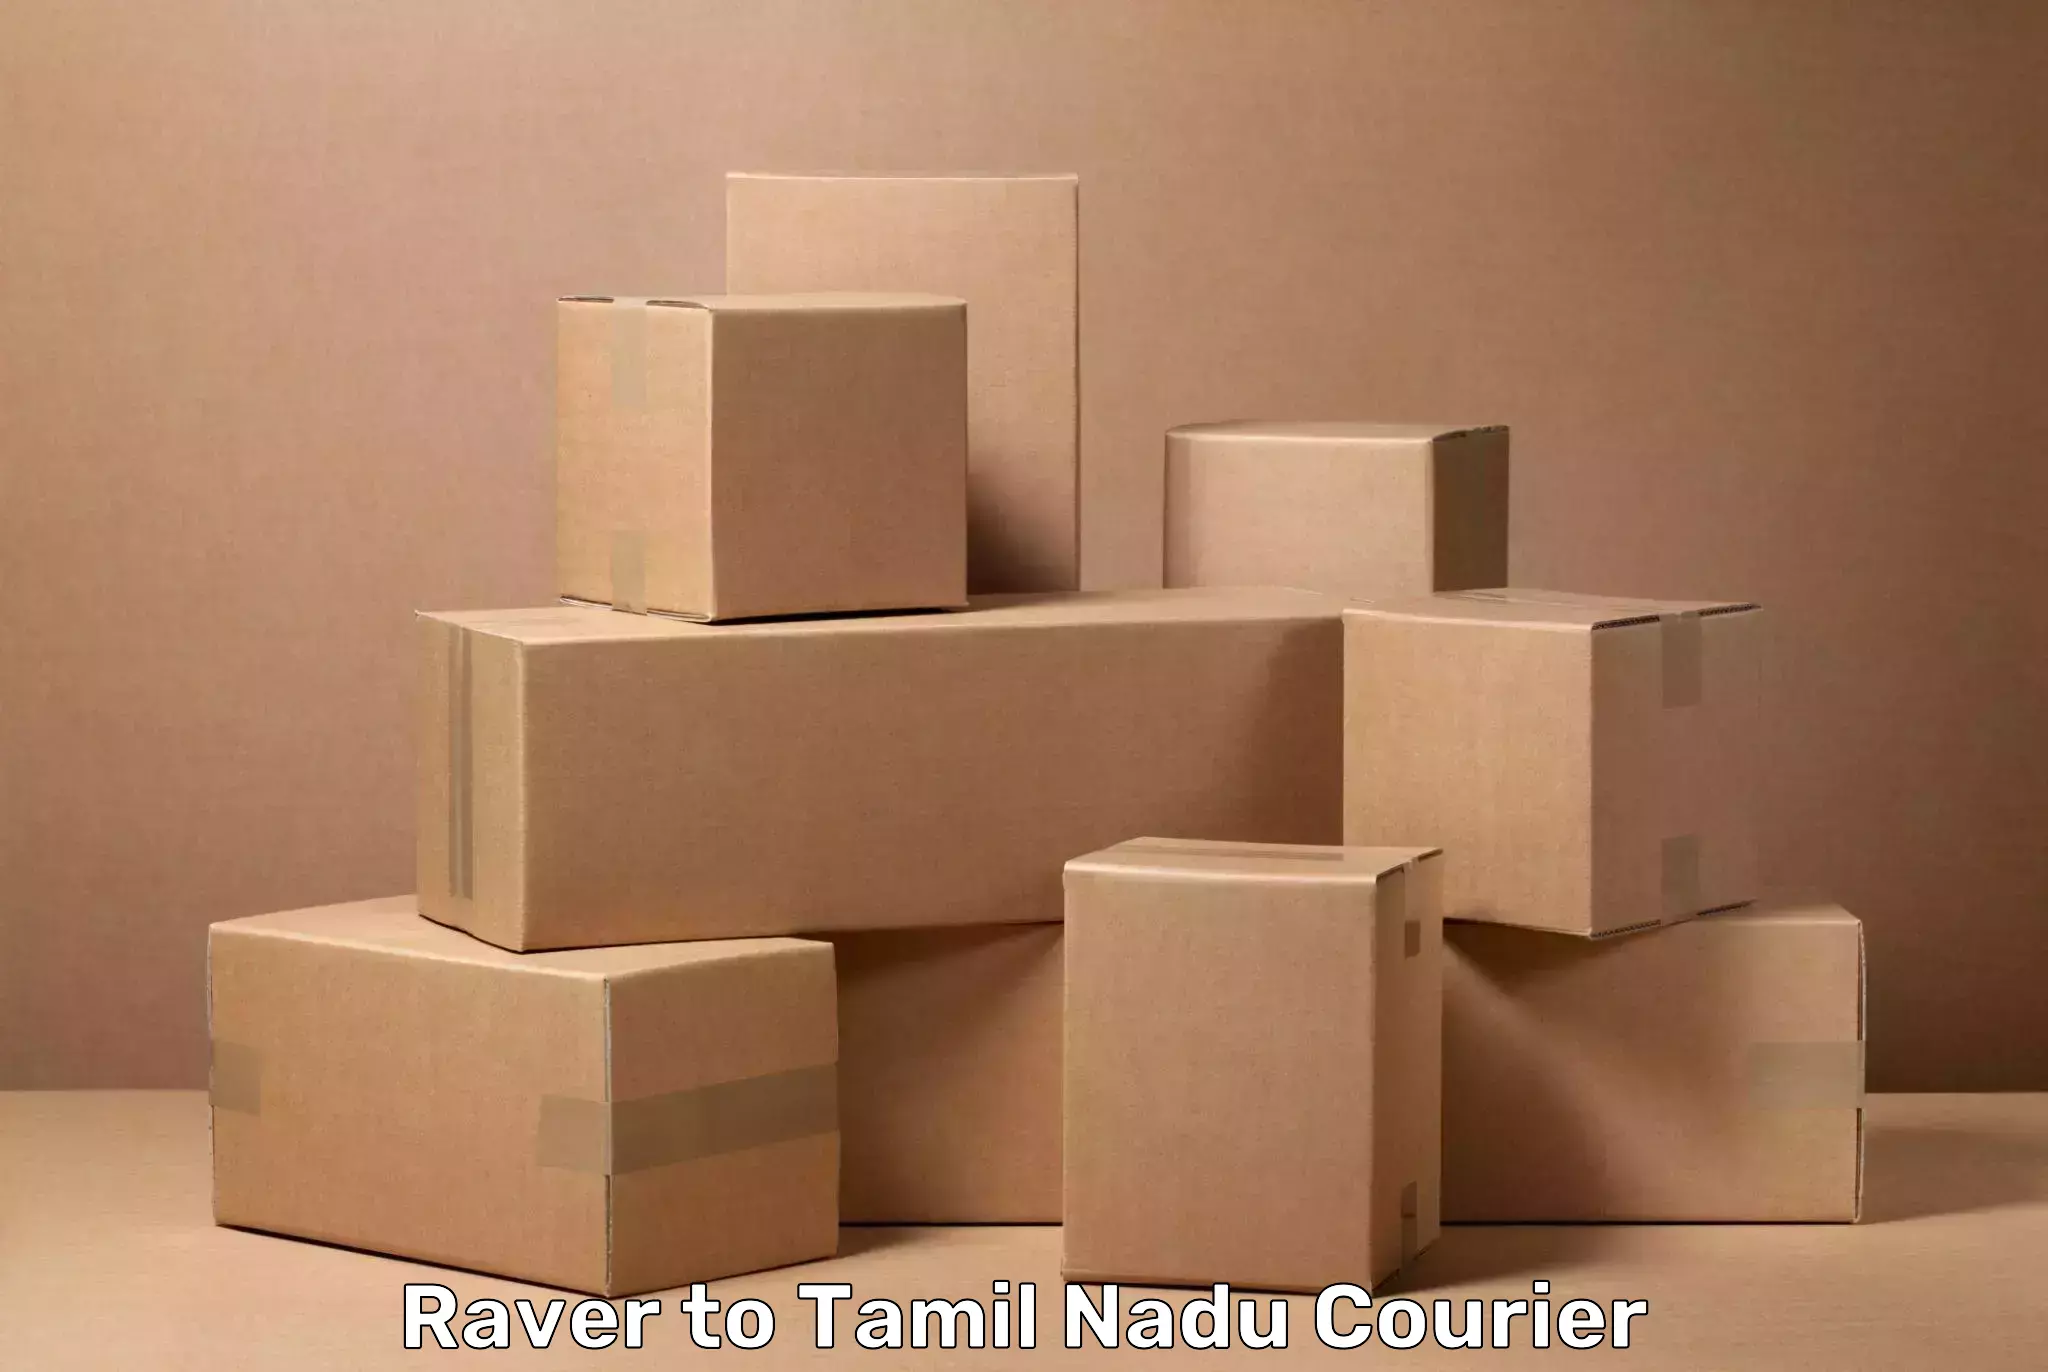 Efficient baggage transport Raver to Tamil Nadu